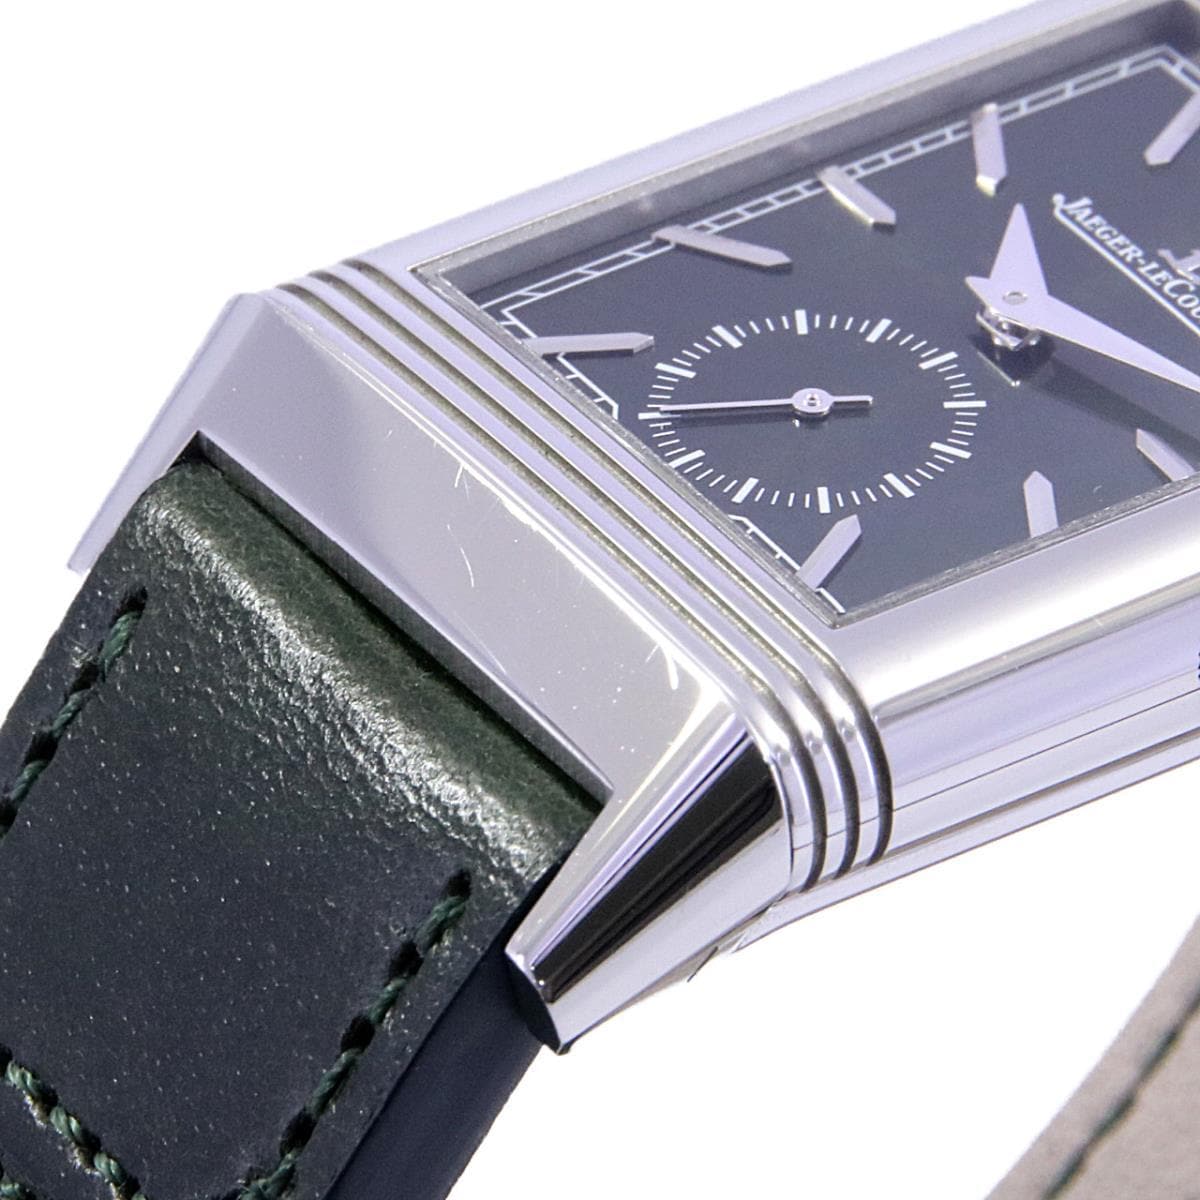 ジャガールクルト レベルソ トリビュート Q397843 JAEGER LECOULTRE 腕時計 グリーン文字盤